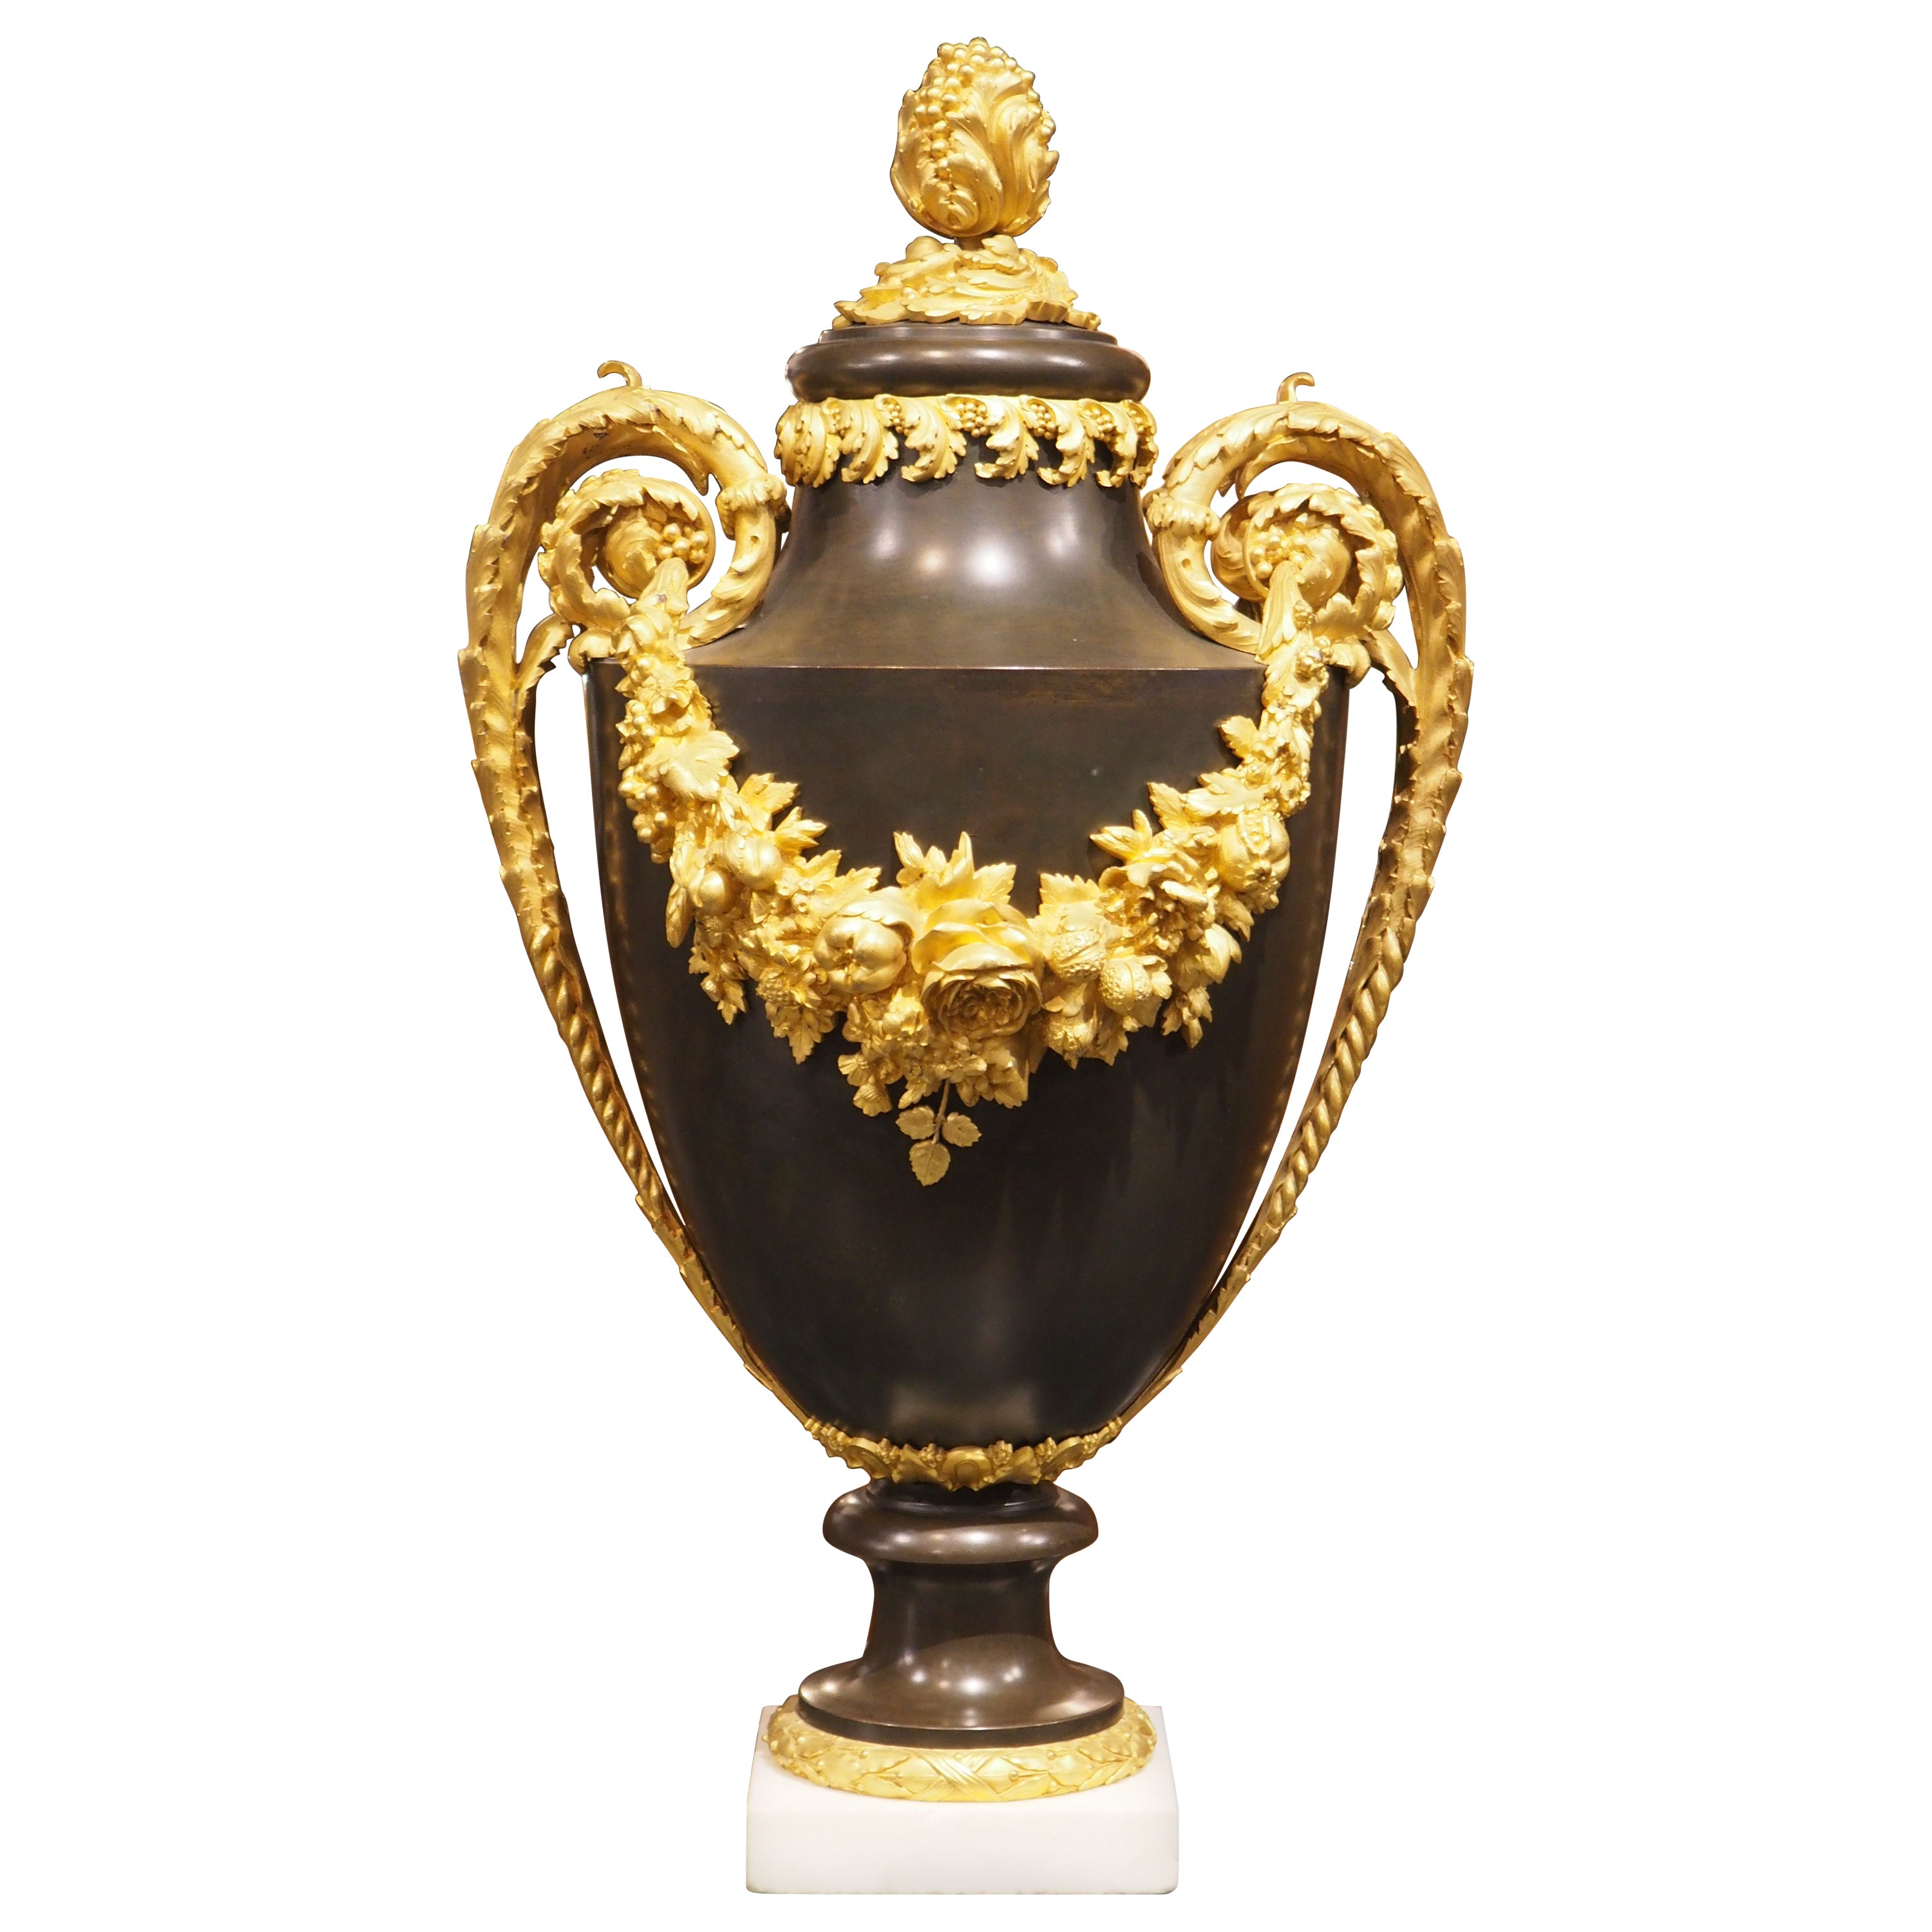 Grande urne française de style Louis XVI montée sur bronze doré, vers 1860